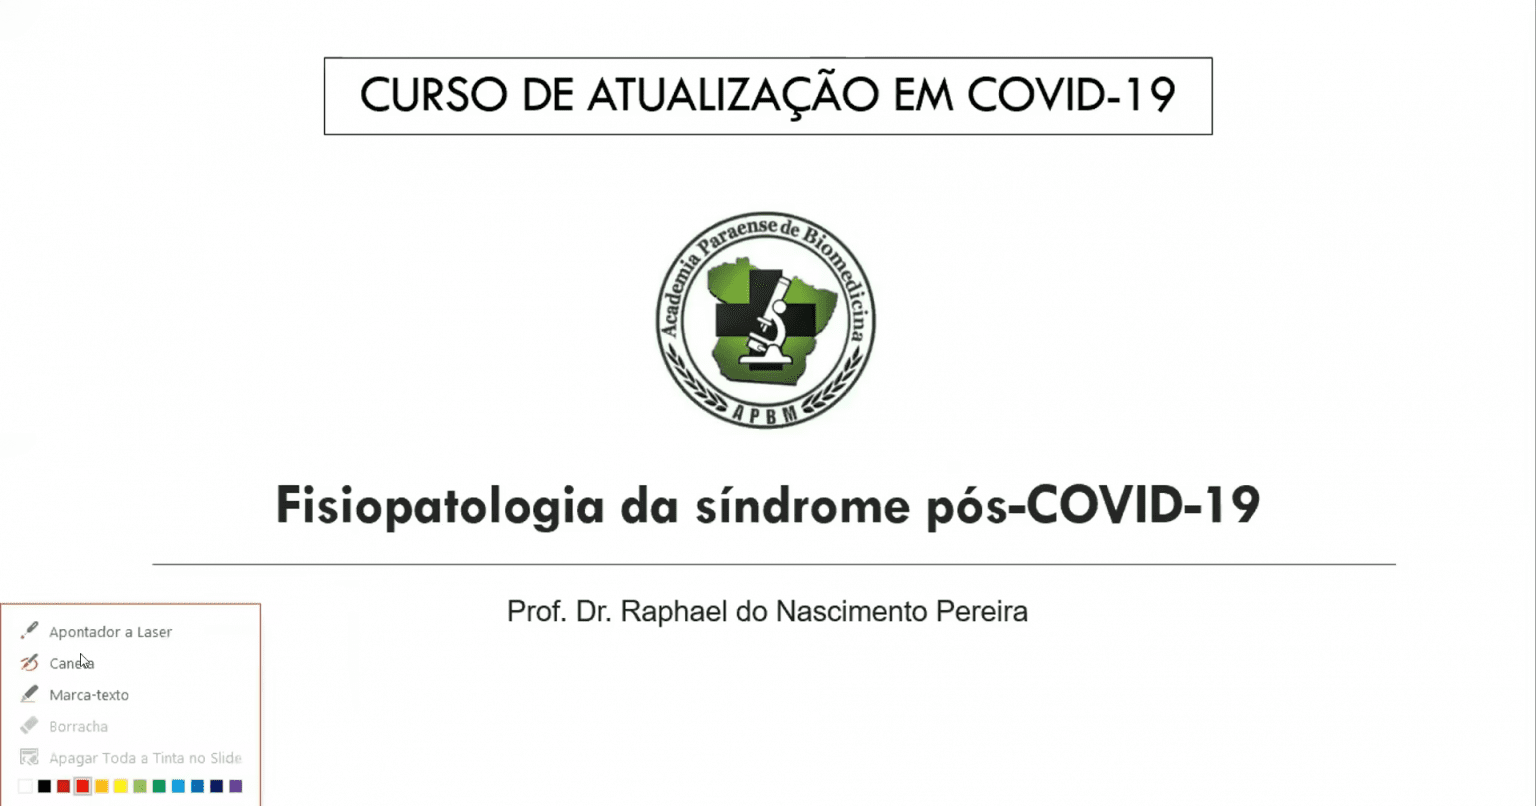 [Apbm] Corte Fisiopatologia Da Síndrome Pós-Covid-19 - 05/05/2021